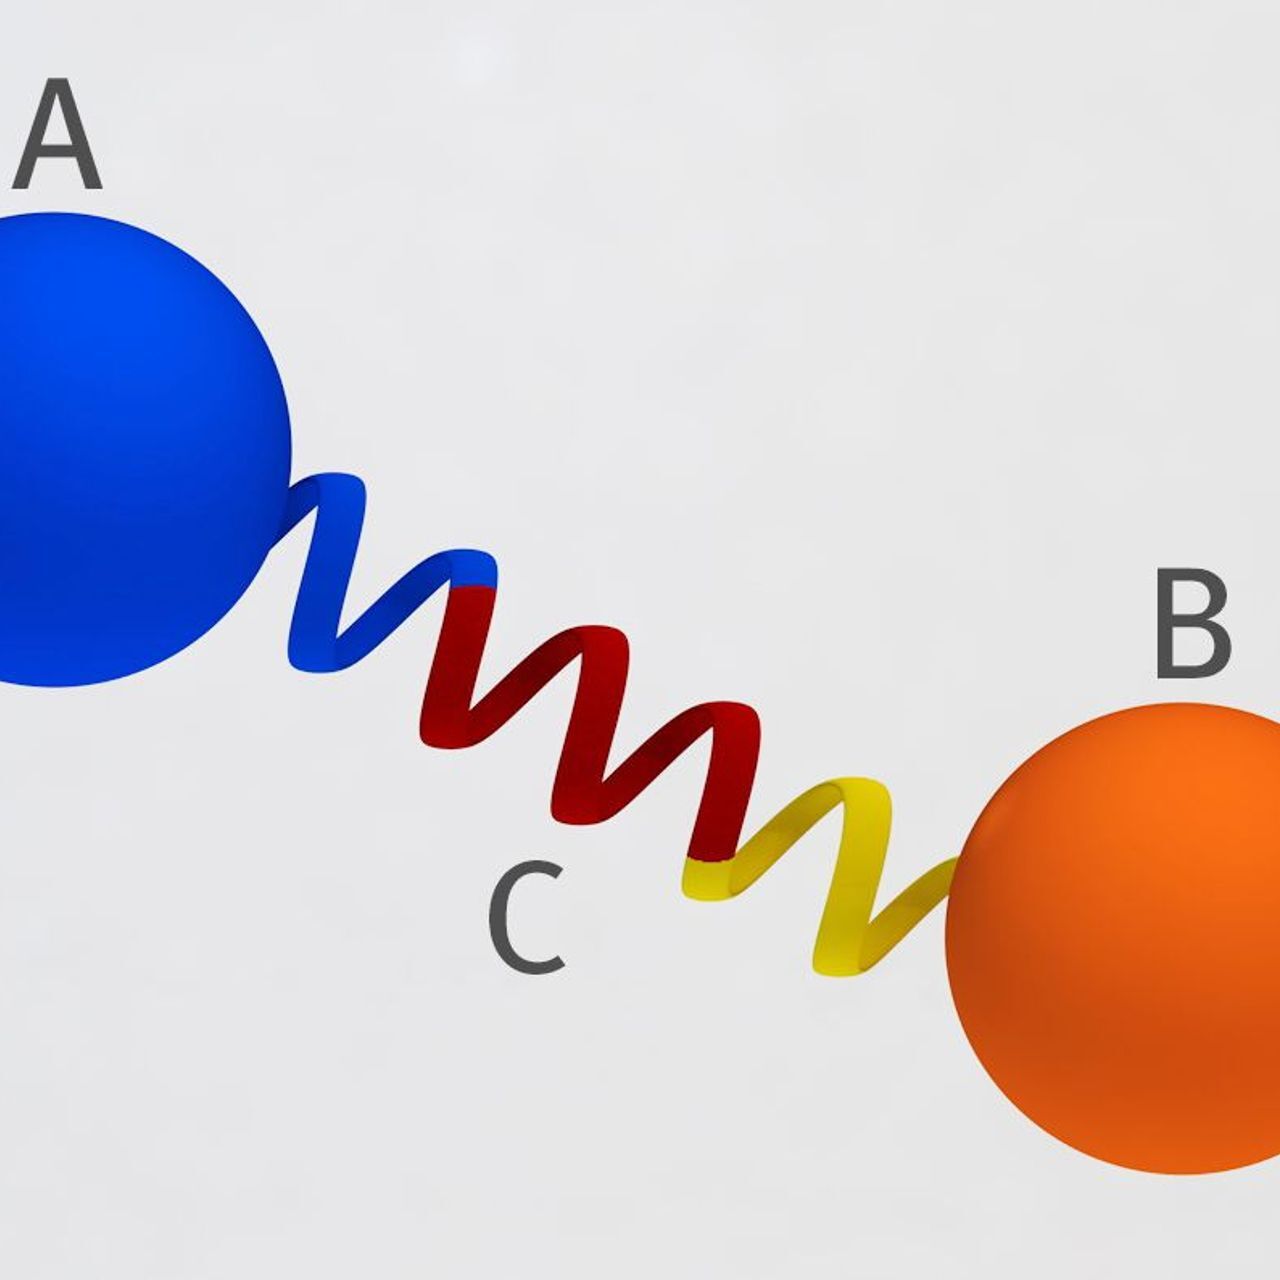 Proteīna tilta principa renderēšana, kas izstrādāta PSI Šveicē: divi proteīni (A un B) ir savienoti viens ar otru noteiktā attālumā un leņķī, izmantojot stingru proteīna spirāli, lai tie nevarētu tuvoties viens otram un nevarētu mijiedarboties (Grafika: Mahir Dzambegovic/Paul Scherrer Institute)